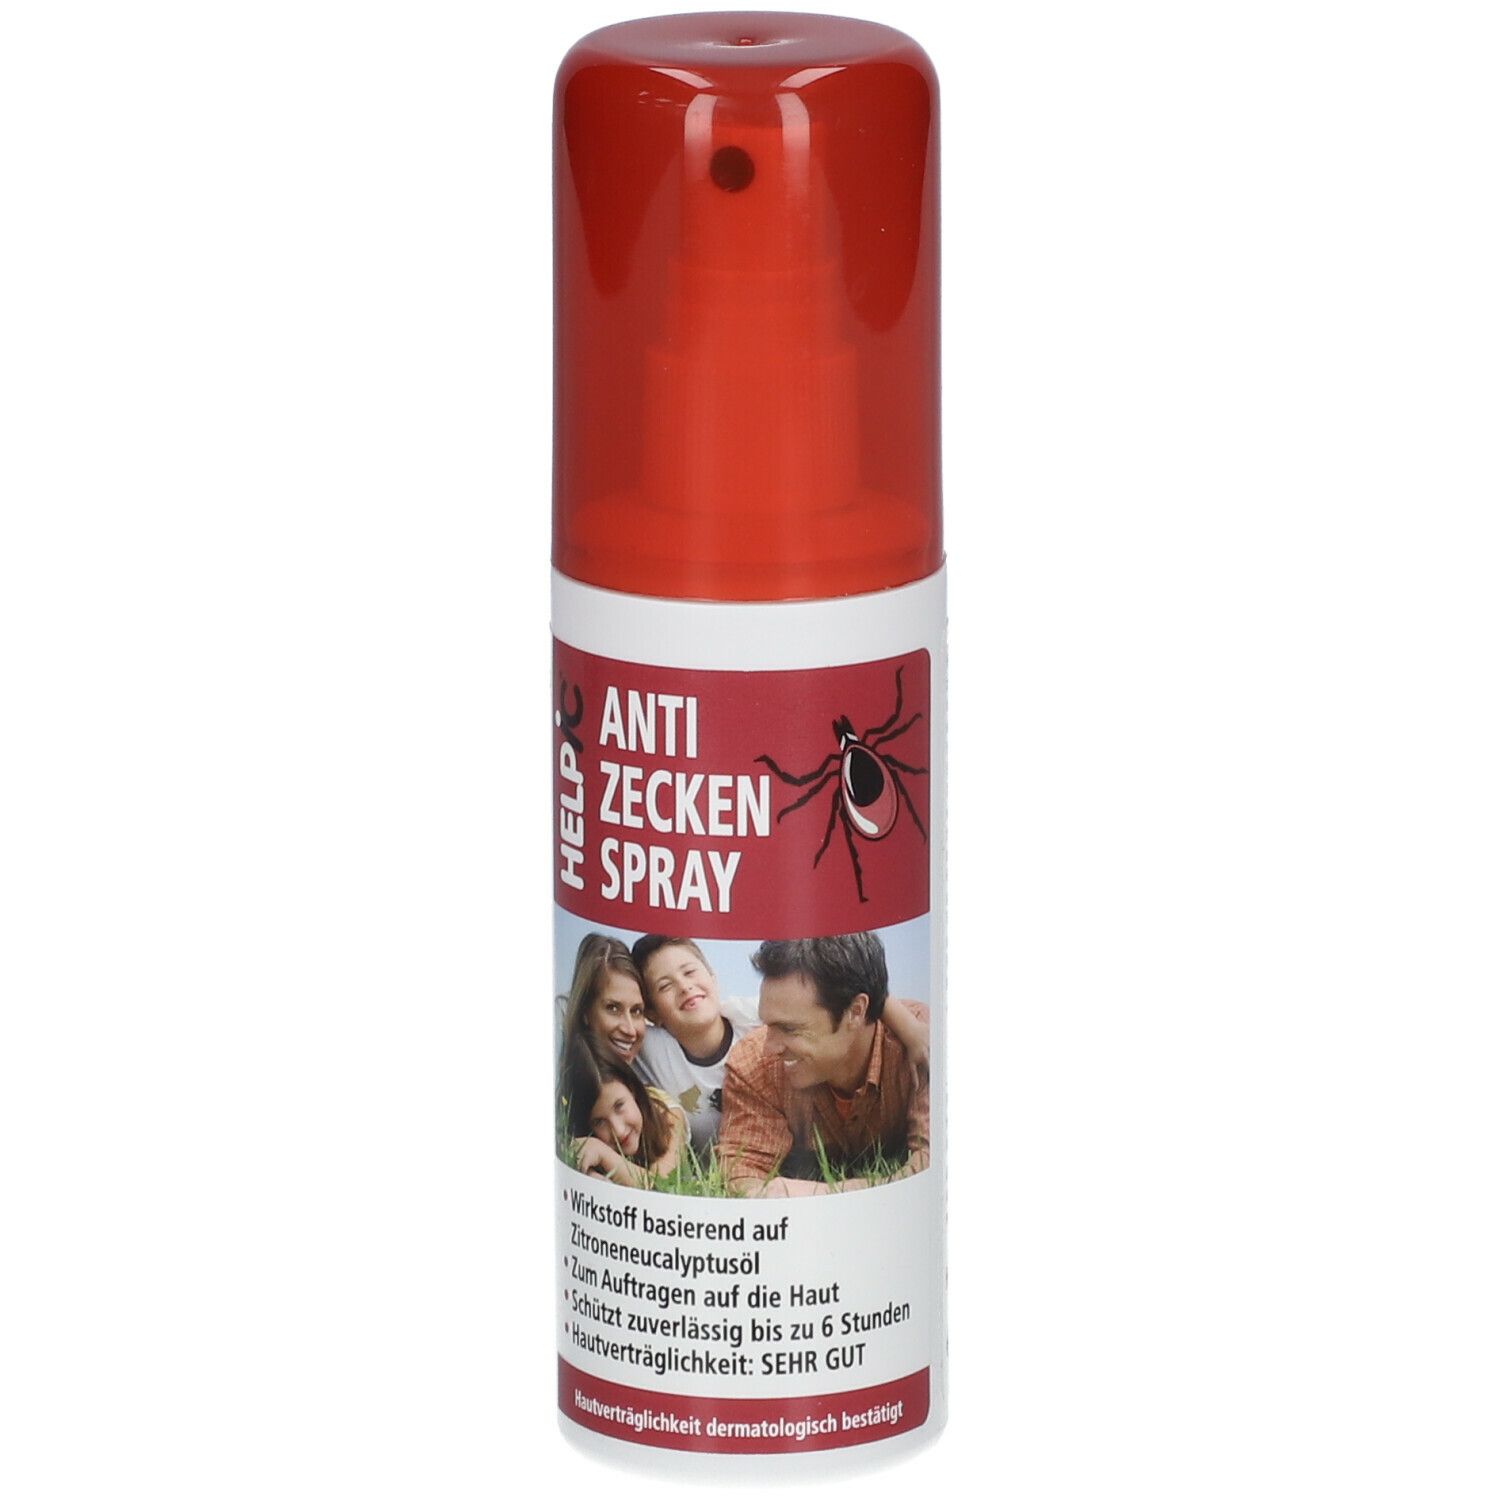 HELPIC® Anti Zecken Spray